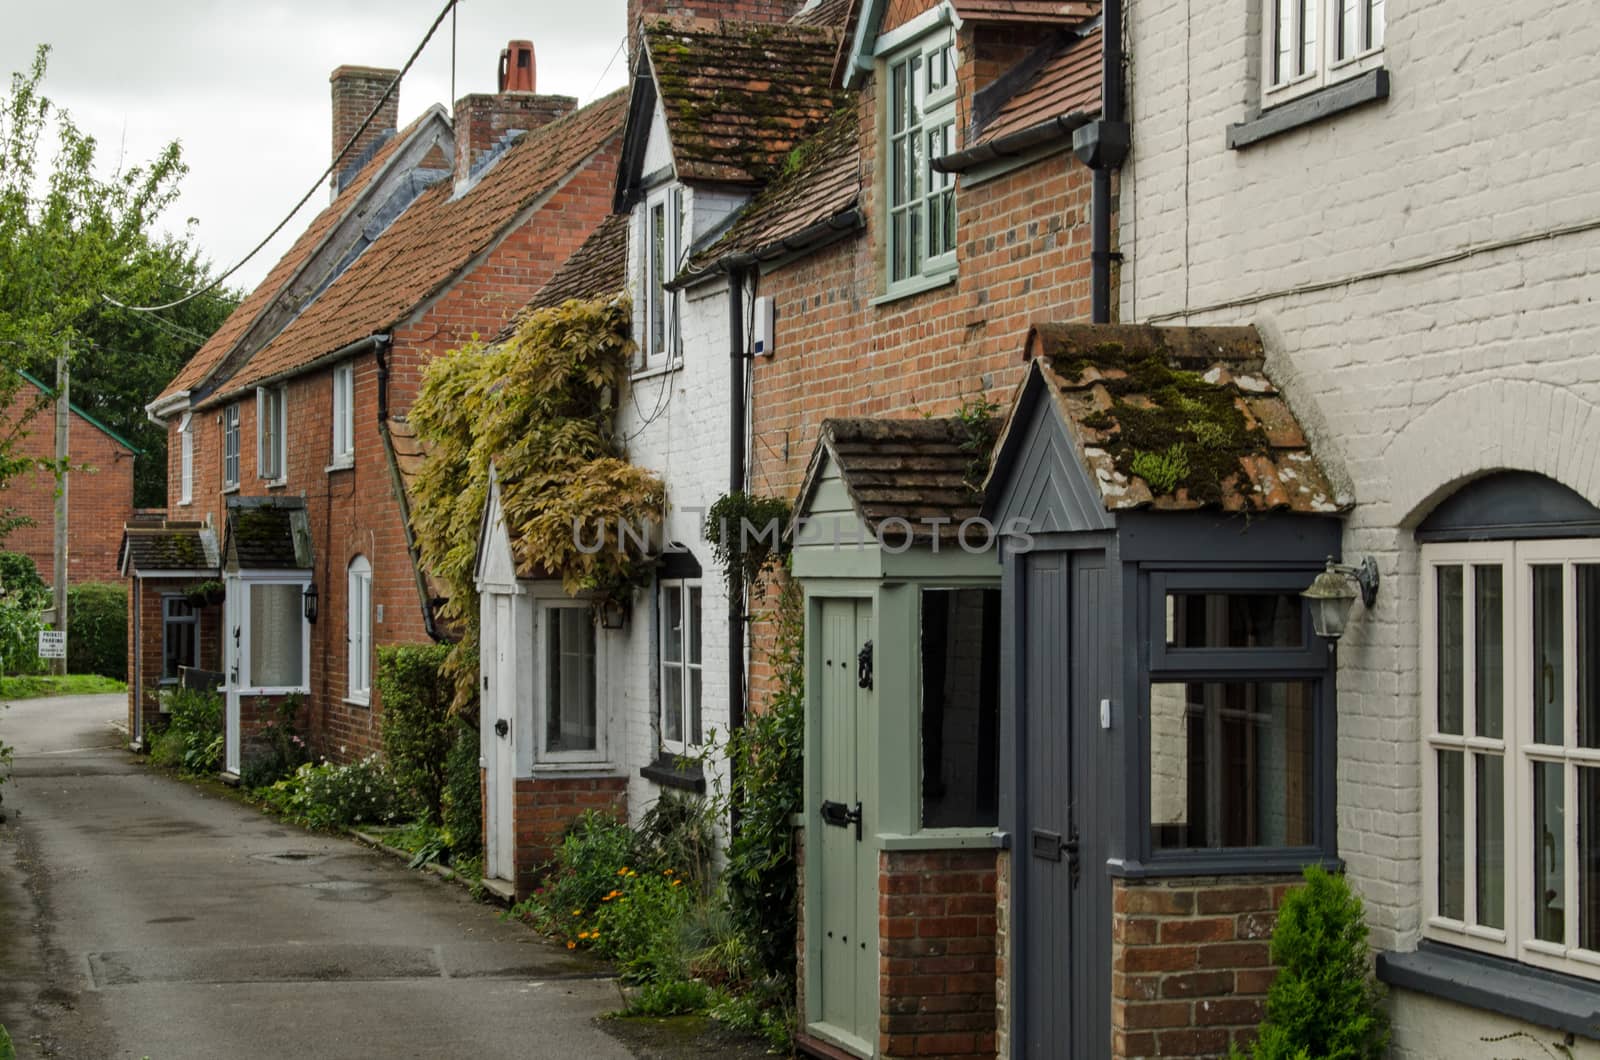 Cottages, Market Lavington, Wiltshire by BasPhoto